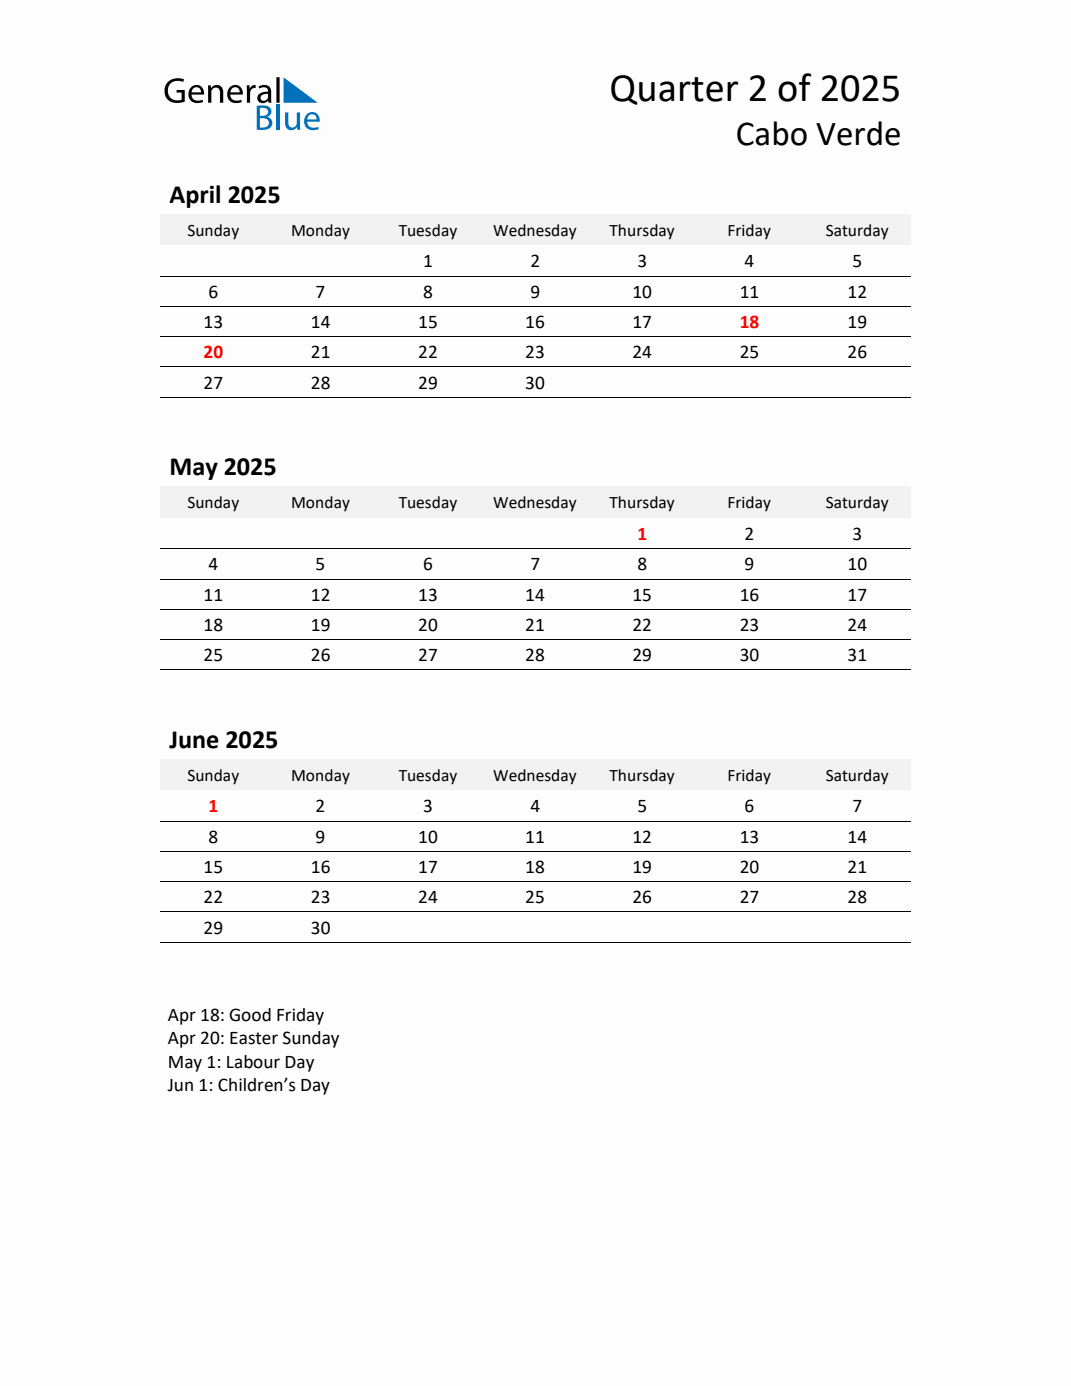 Q2 2025 Quarterly Calendar with Cabo Verde Holidays